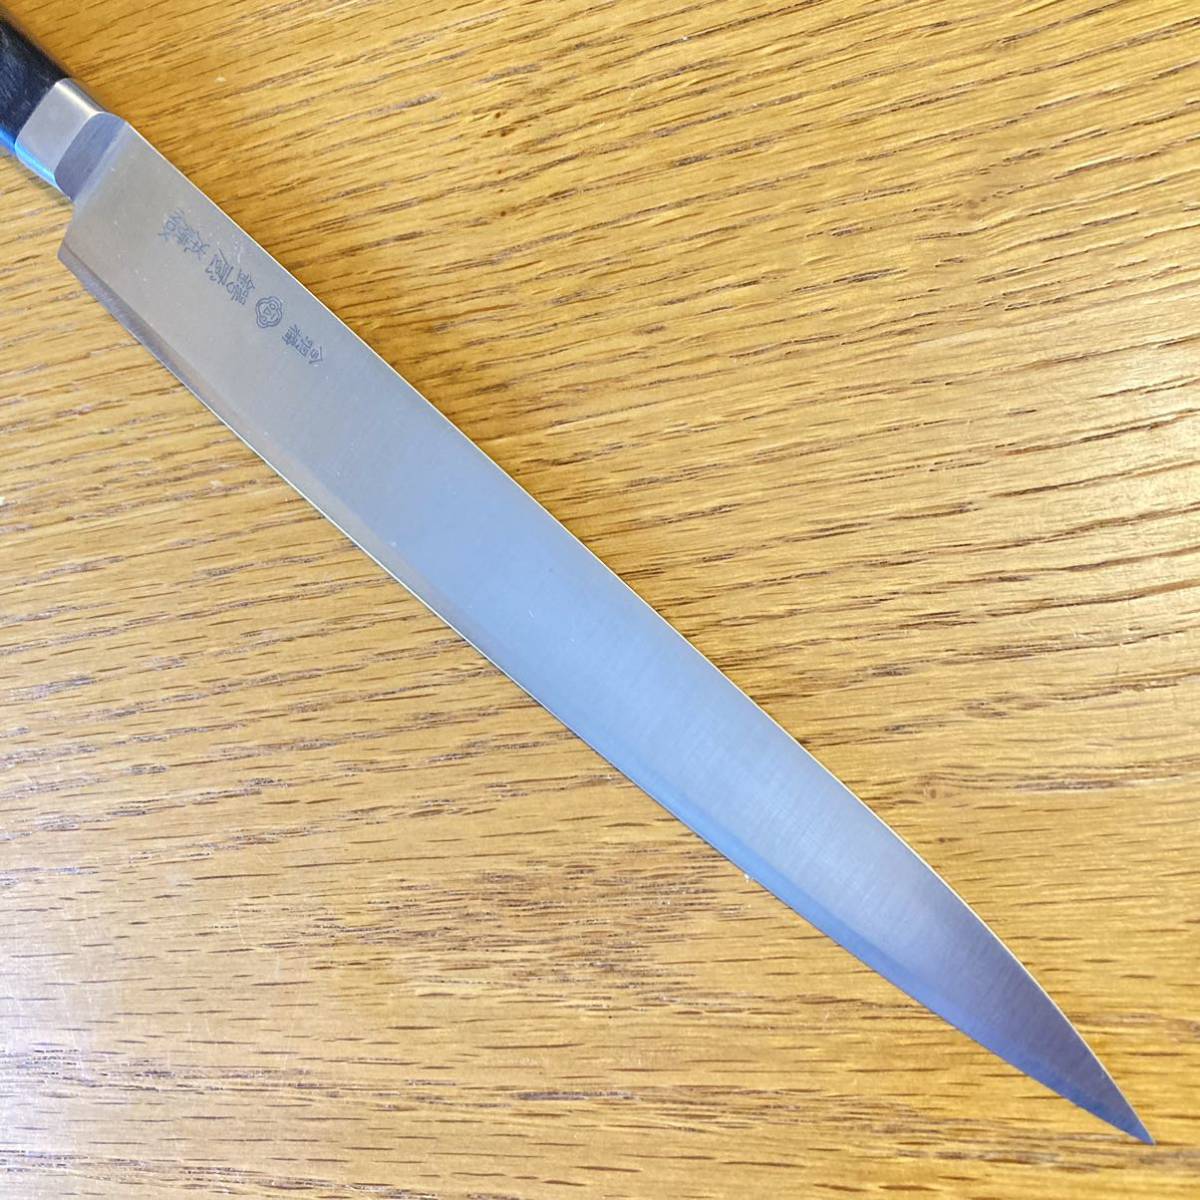 鍔屋 本焼 INOX 筋引包丁 庖丁 洋包丁 刃渡約24cm Japanese Knife 刃物 _画像4